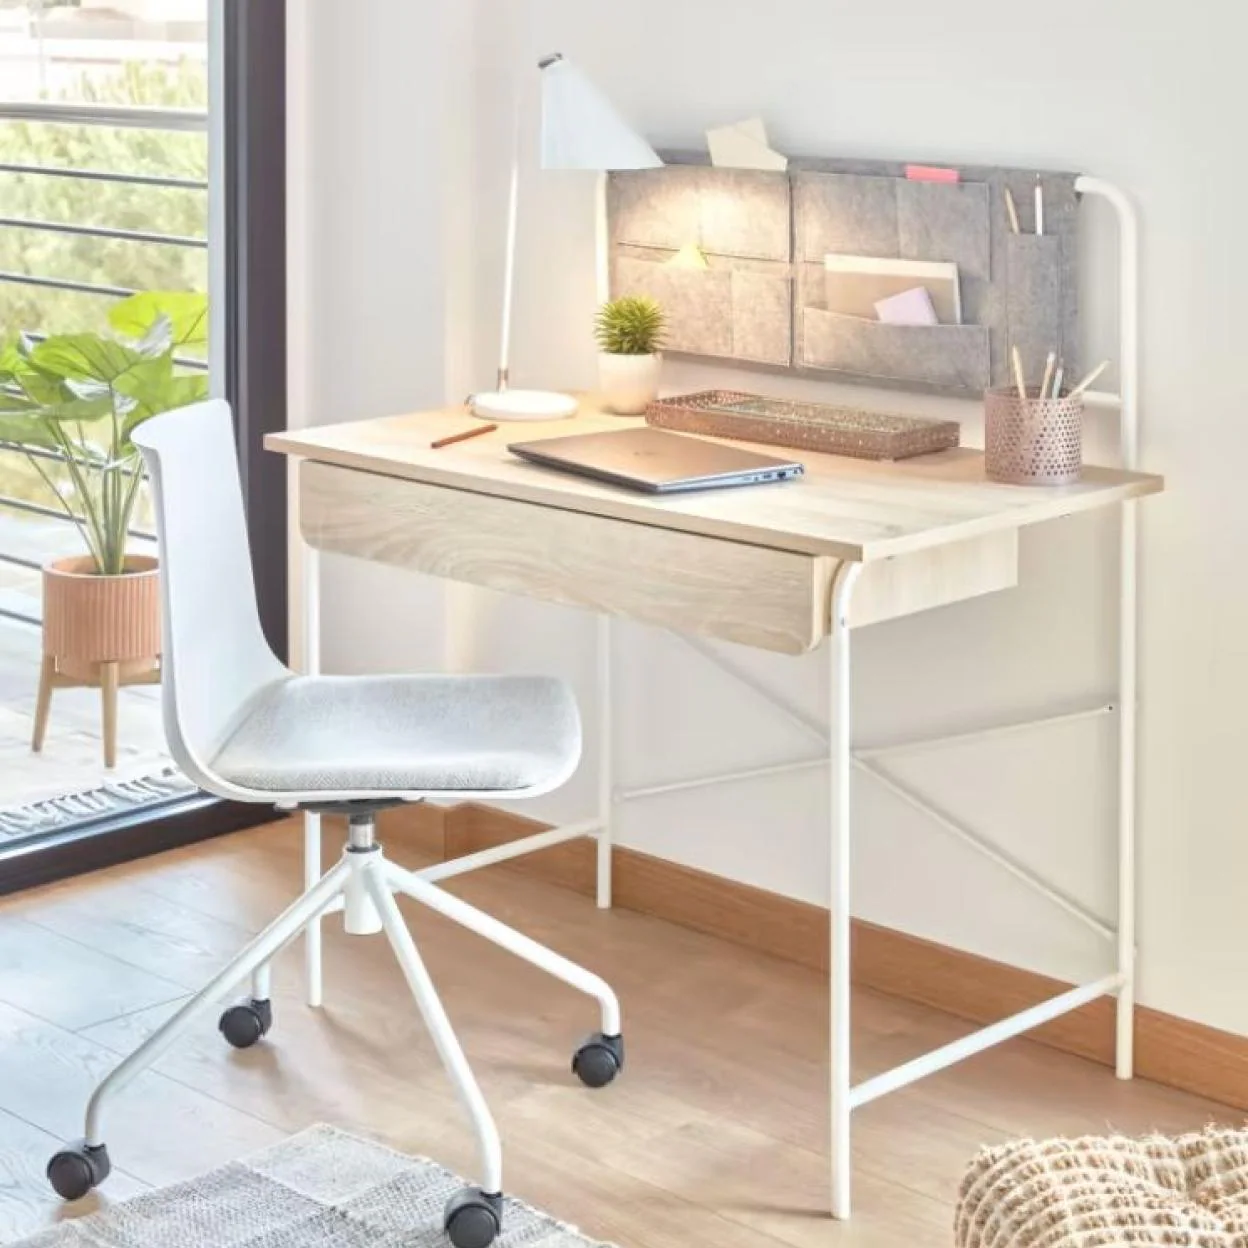 10 soluciones de almacenaje para tener un escritorio muy bien